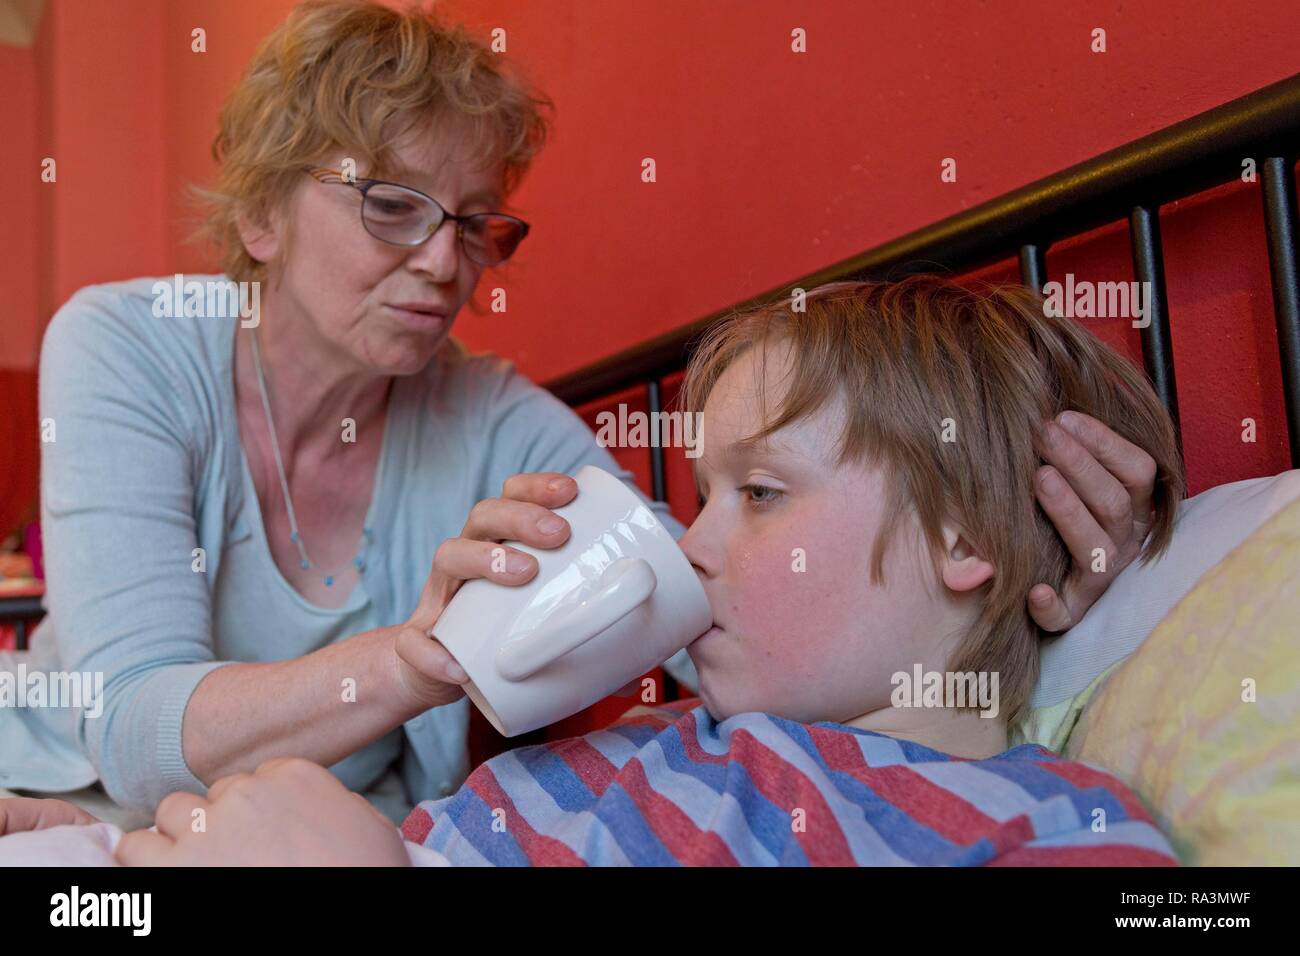 La madre cuida del hijo enfermo en la cama, símbolo de imagen, frío, cuidado, padres de familia, infancia, Alemania Foto de stock